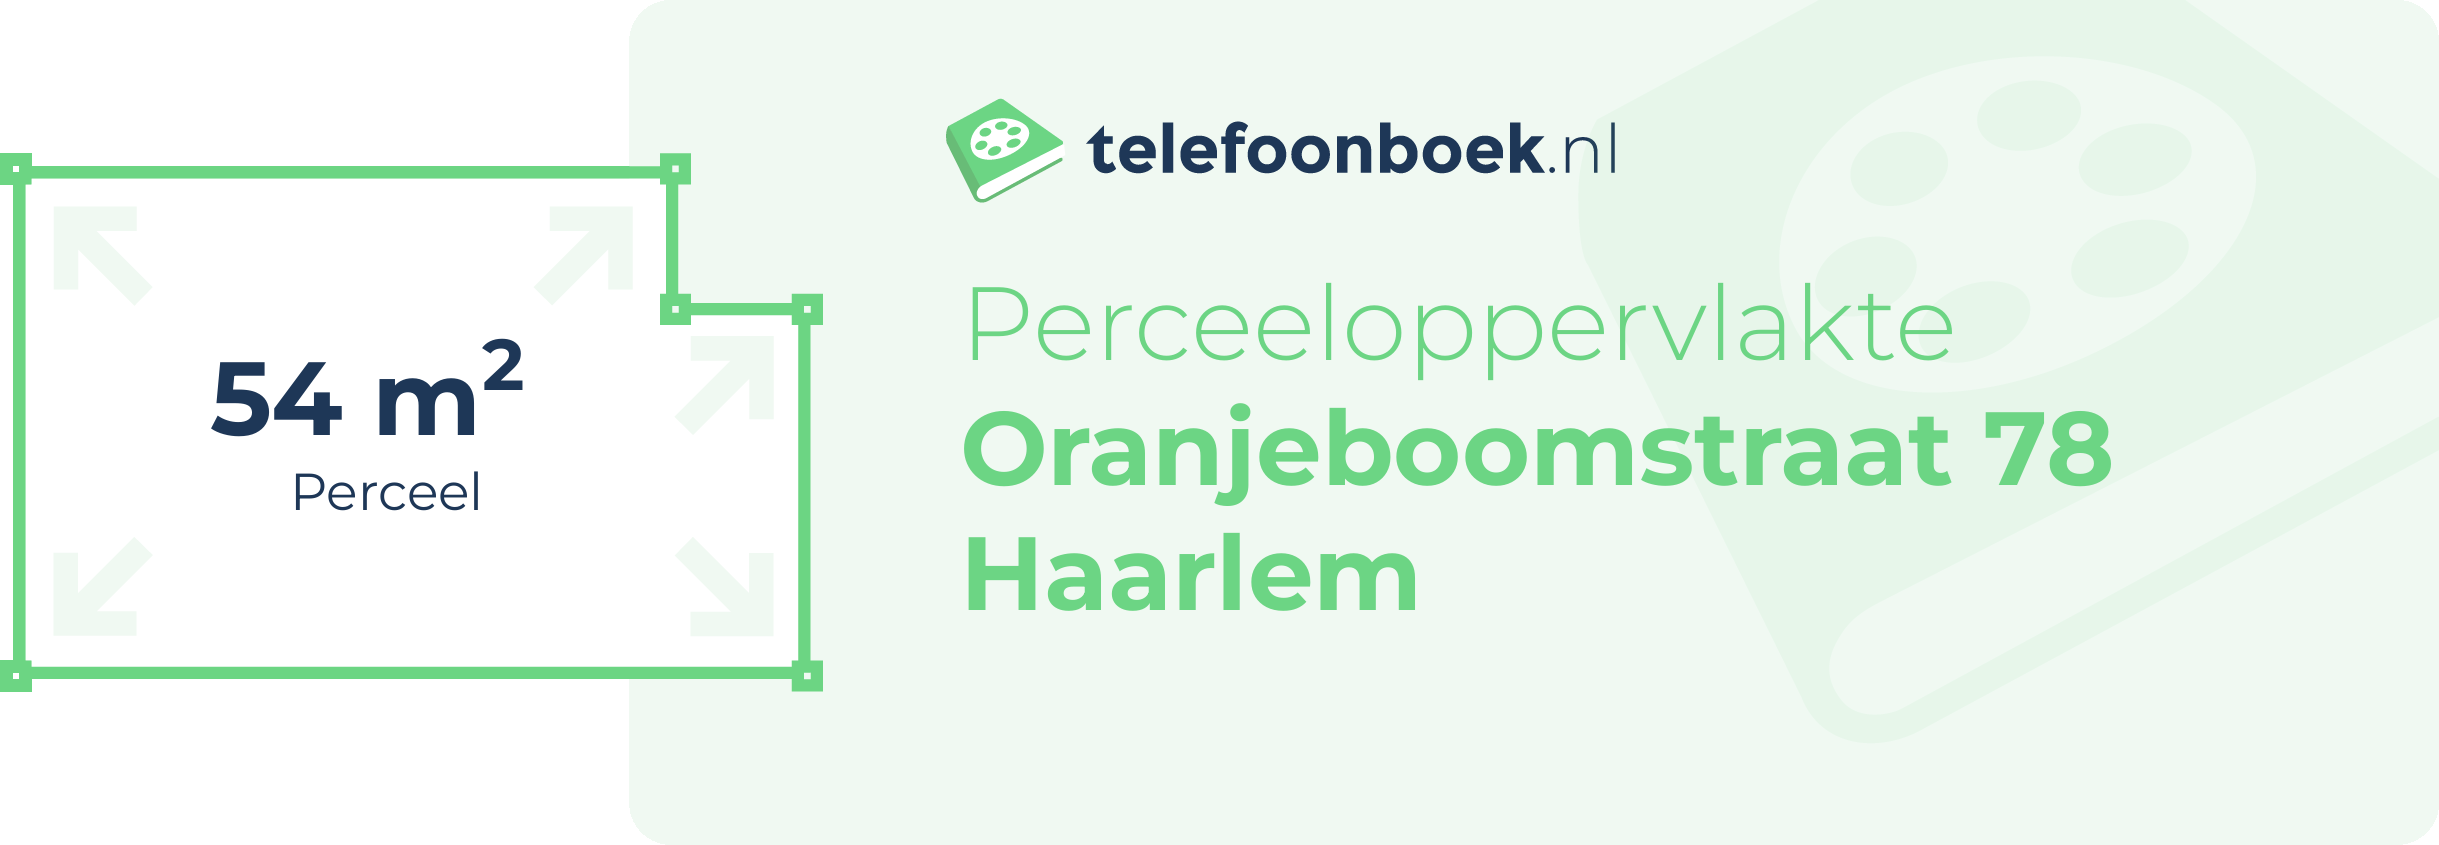 Perceeloppervlakte Oranjeboomstraat 78 Haarlem